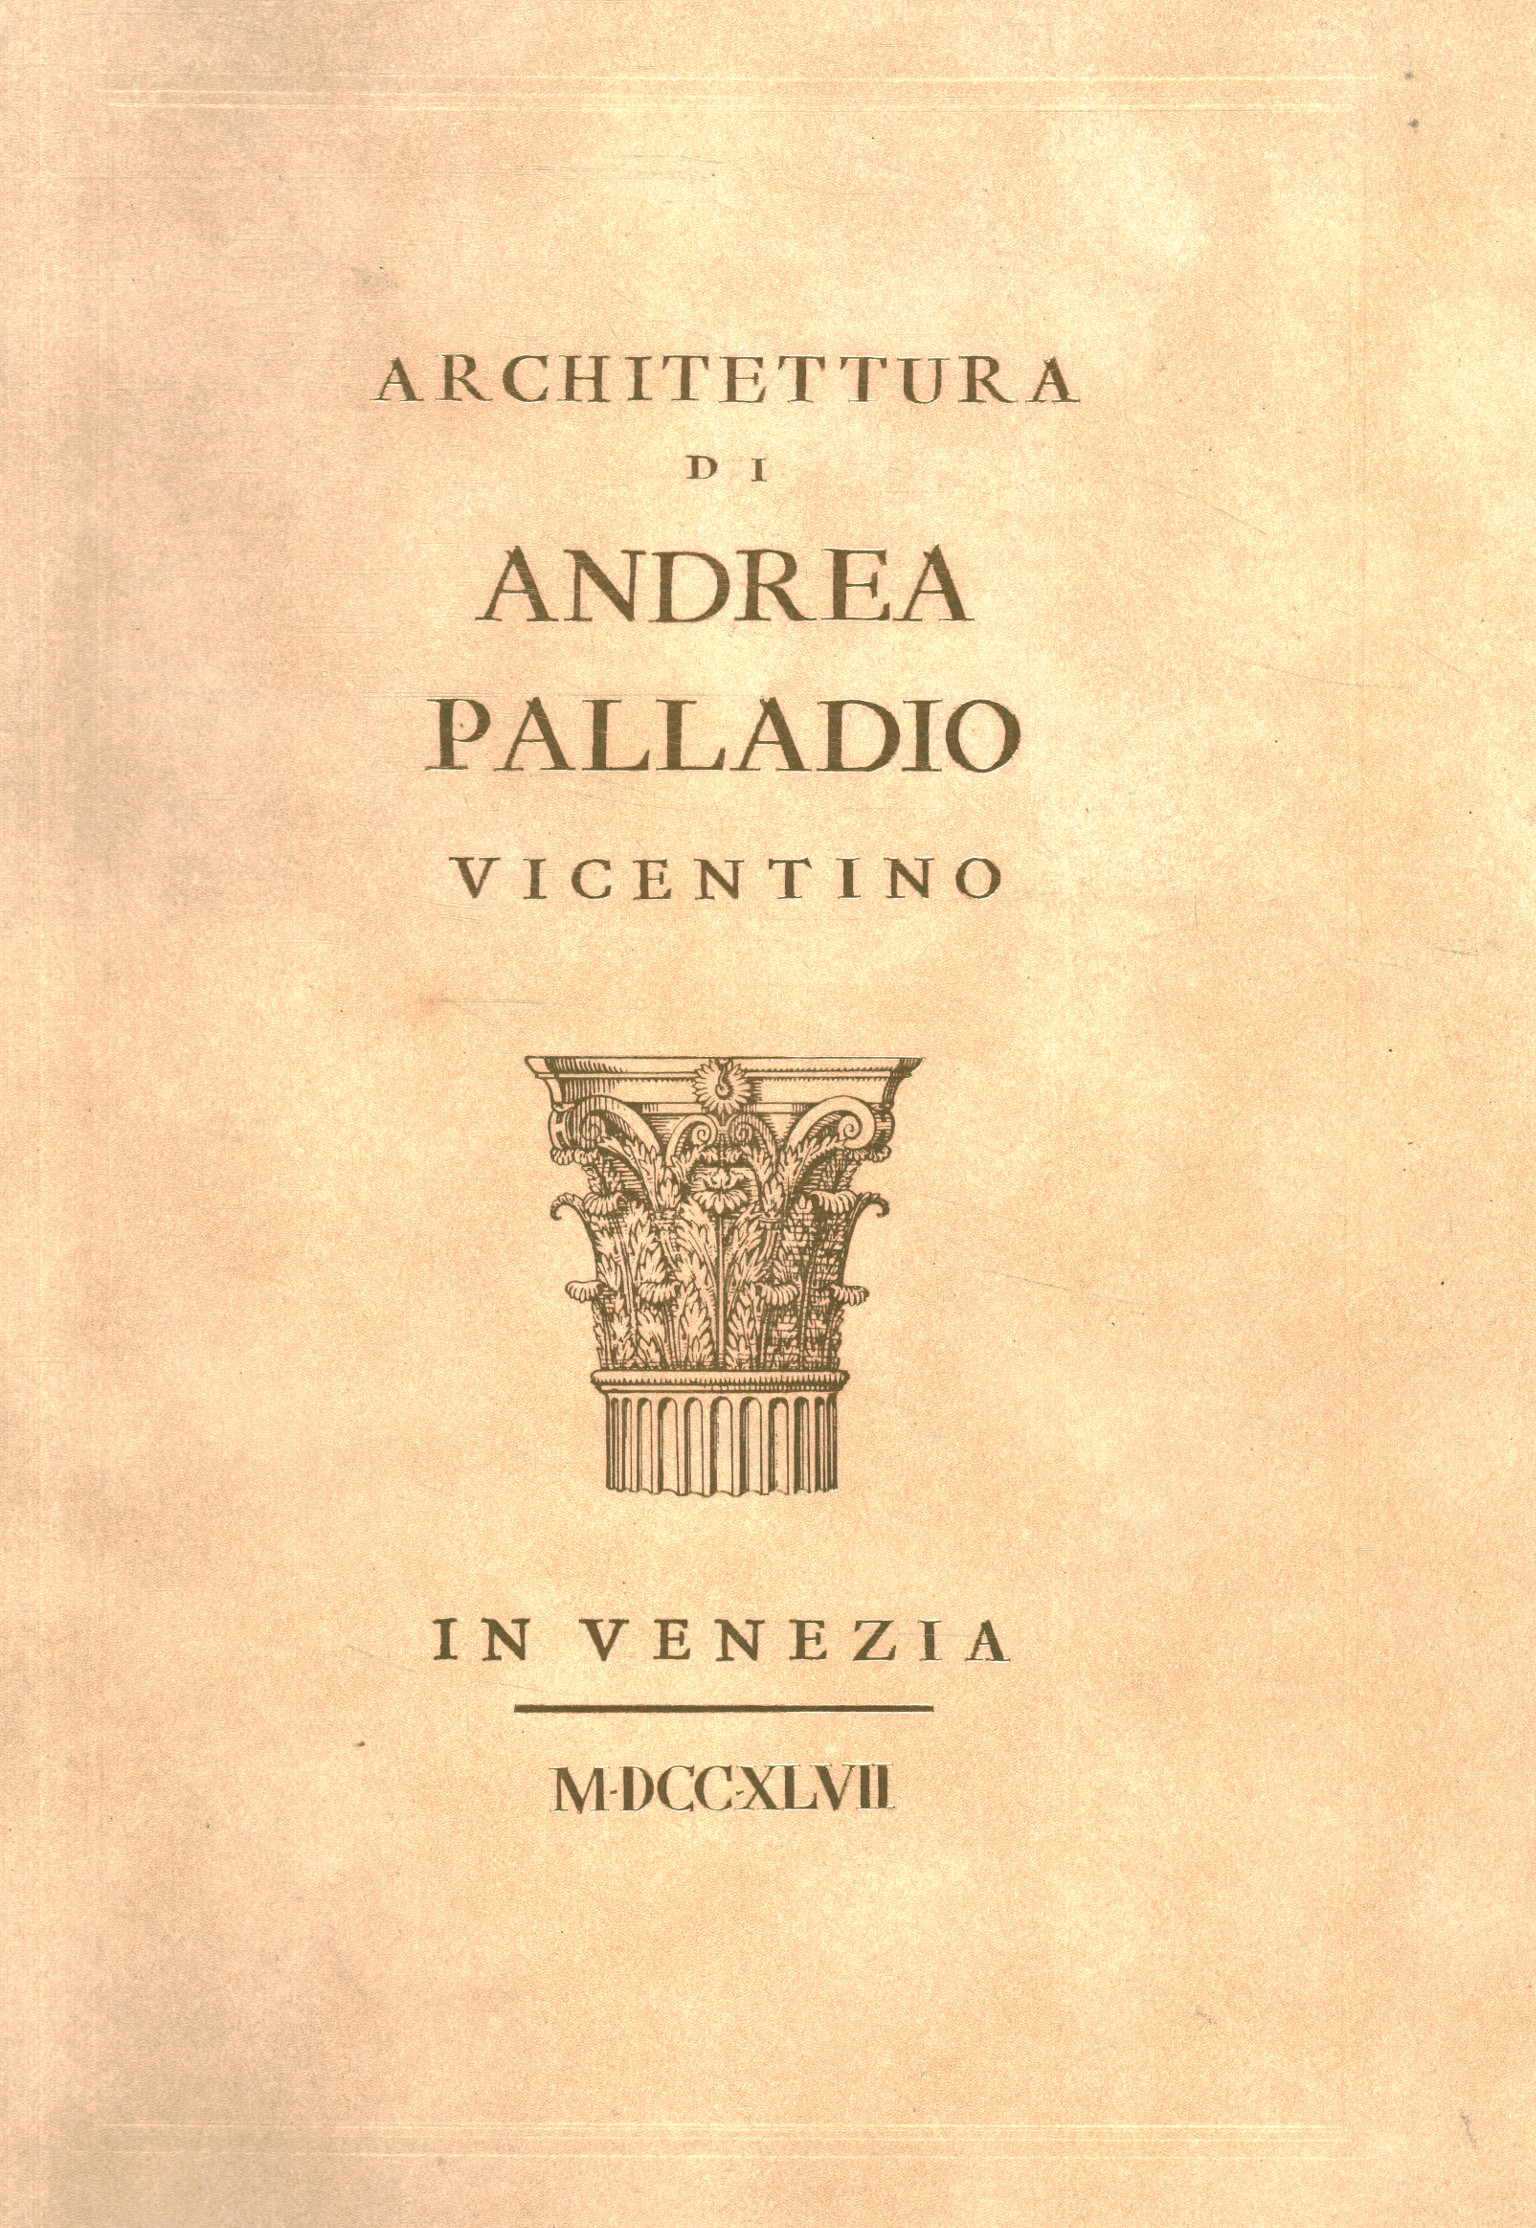 Architektur von Andrea Palladio aus Vicenza%,Architektur von Andrea Palladio aus Vicenza%,Architektur von Andrea Palladio aus Vicenza%